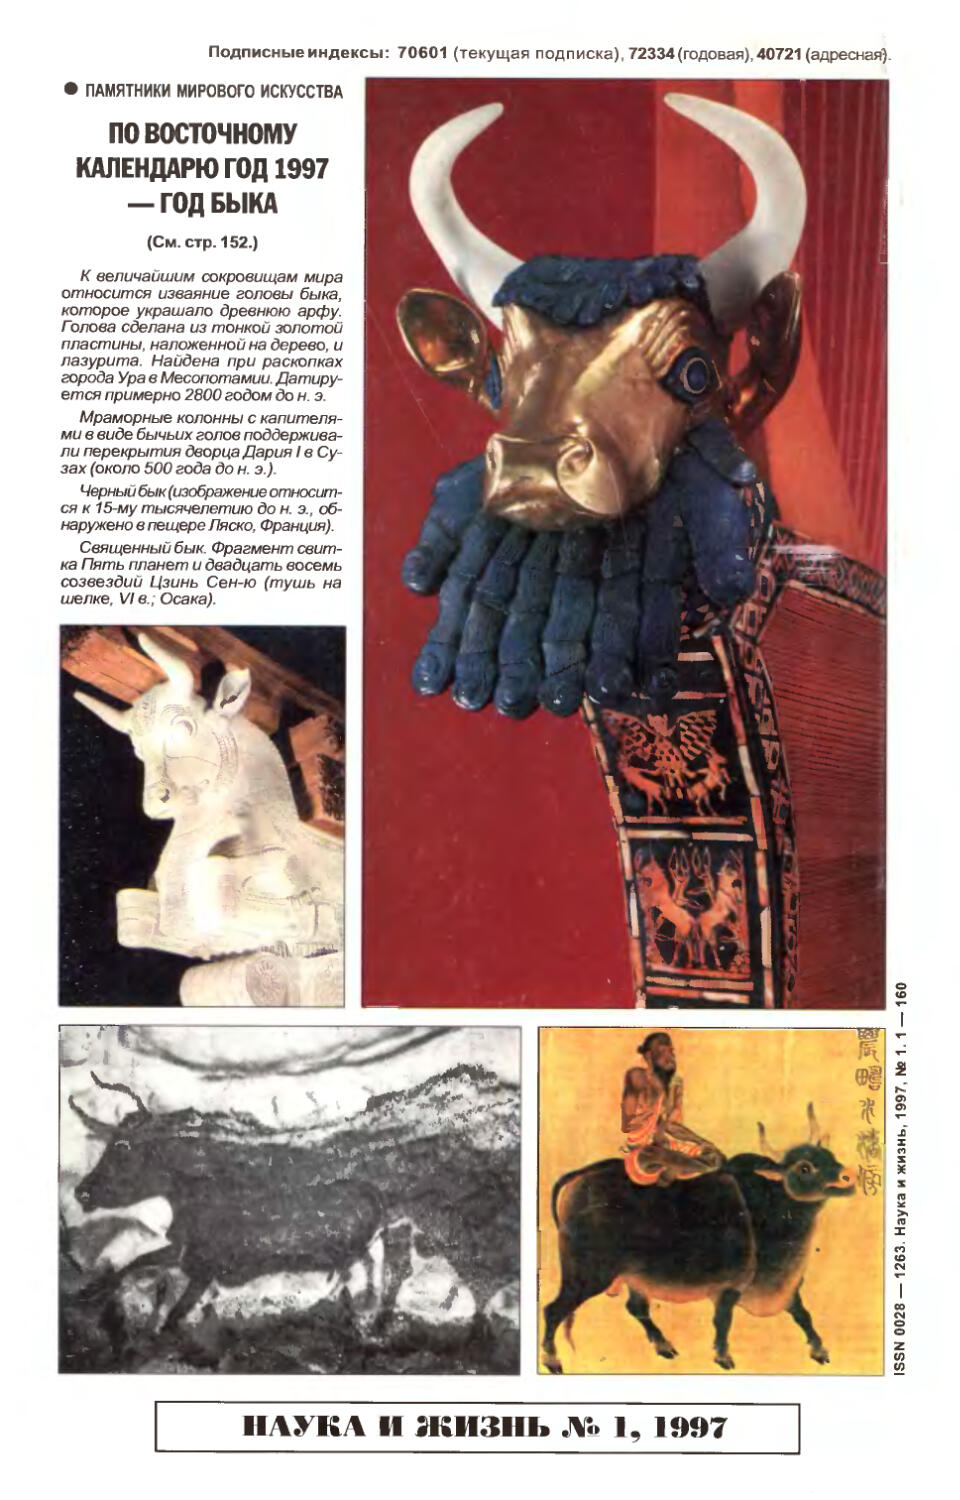 [Памятники мирового искусства] — Изображение быка в разные века и у разных народов. Бык по-восточному календарю — символ 1997 года.